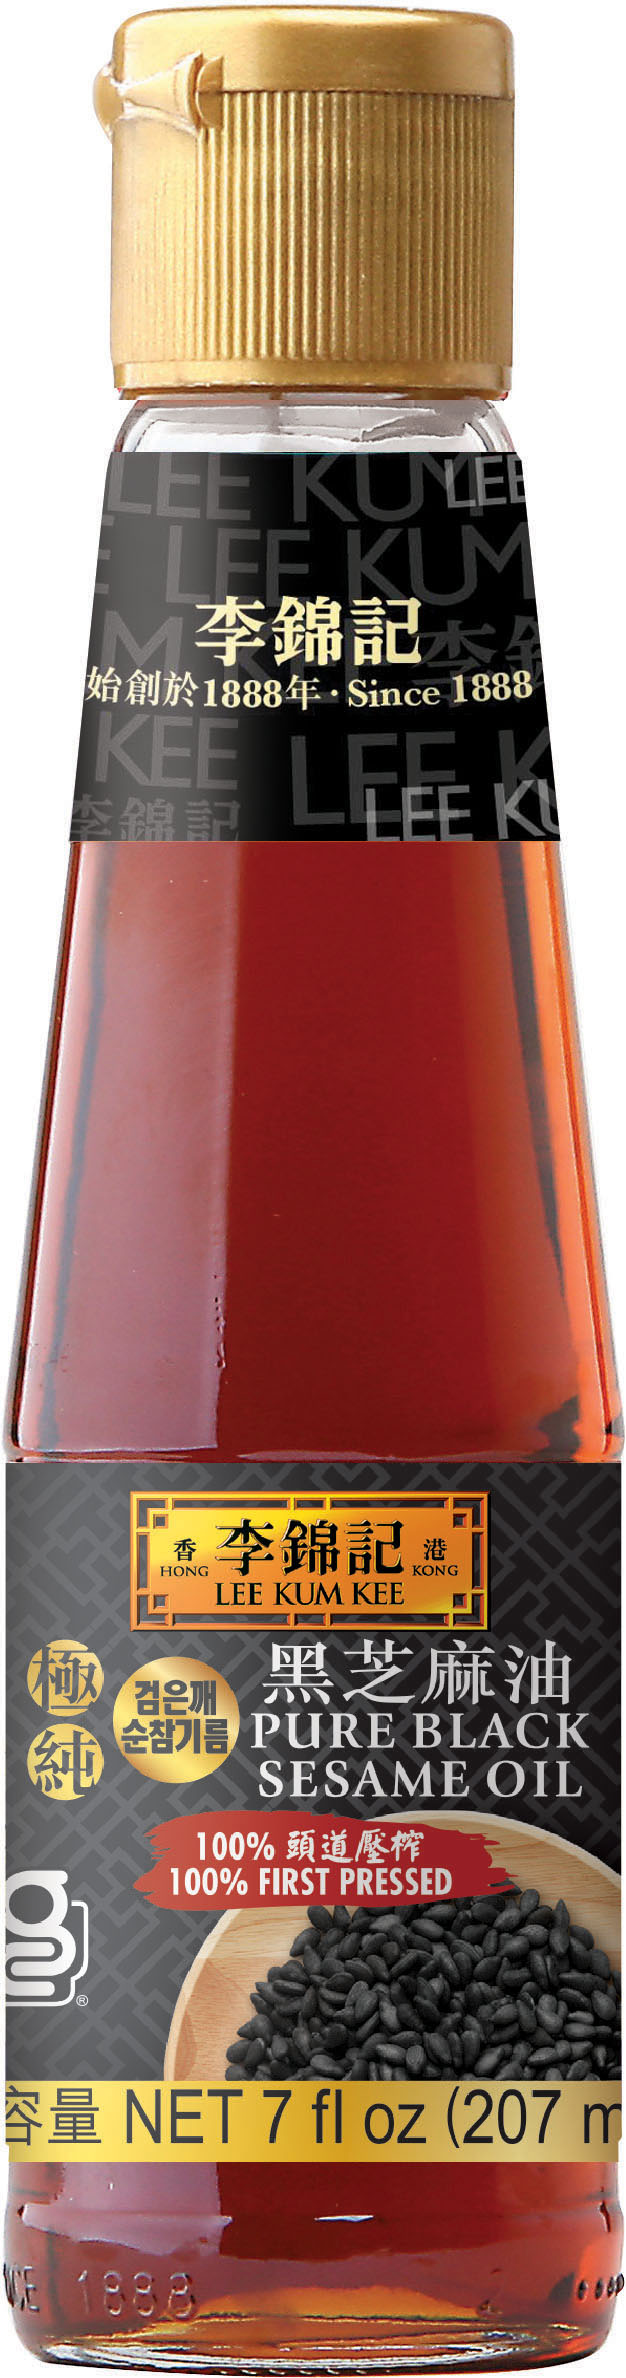 極純黑芝麻油 7 fl oz (207 ml), 瓶裝